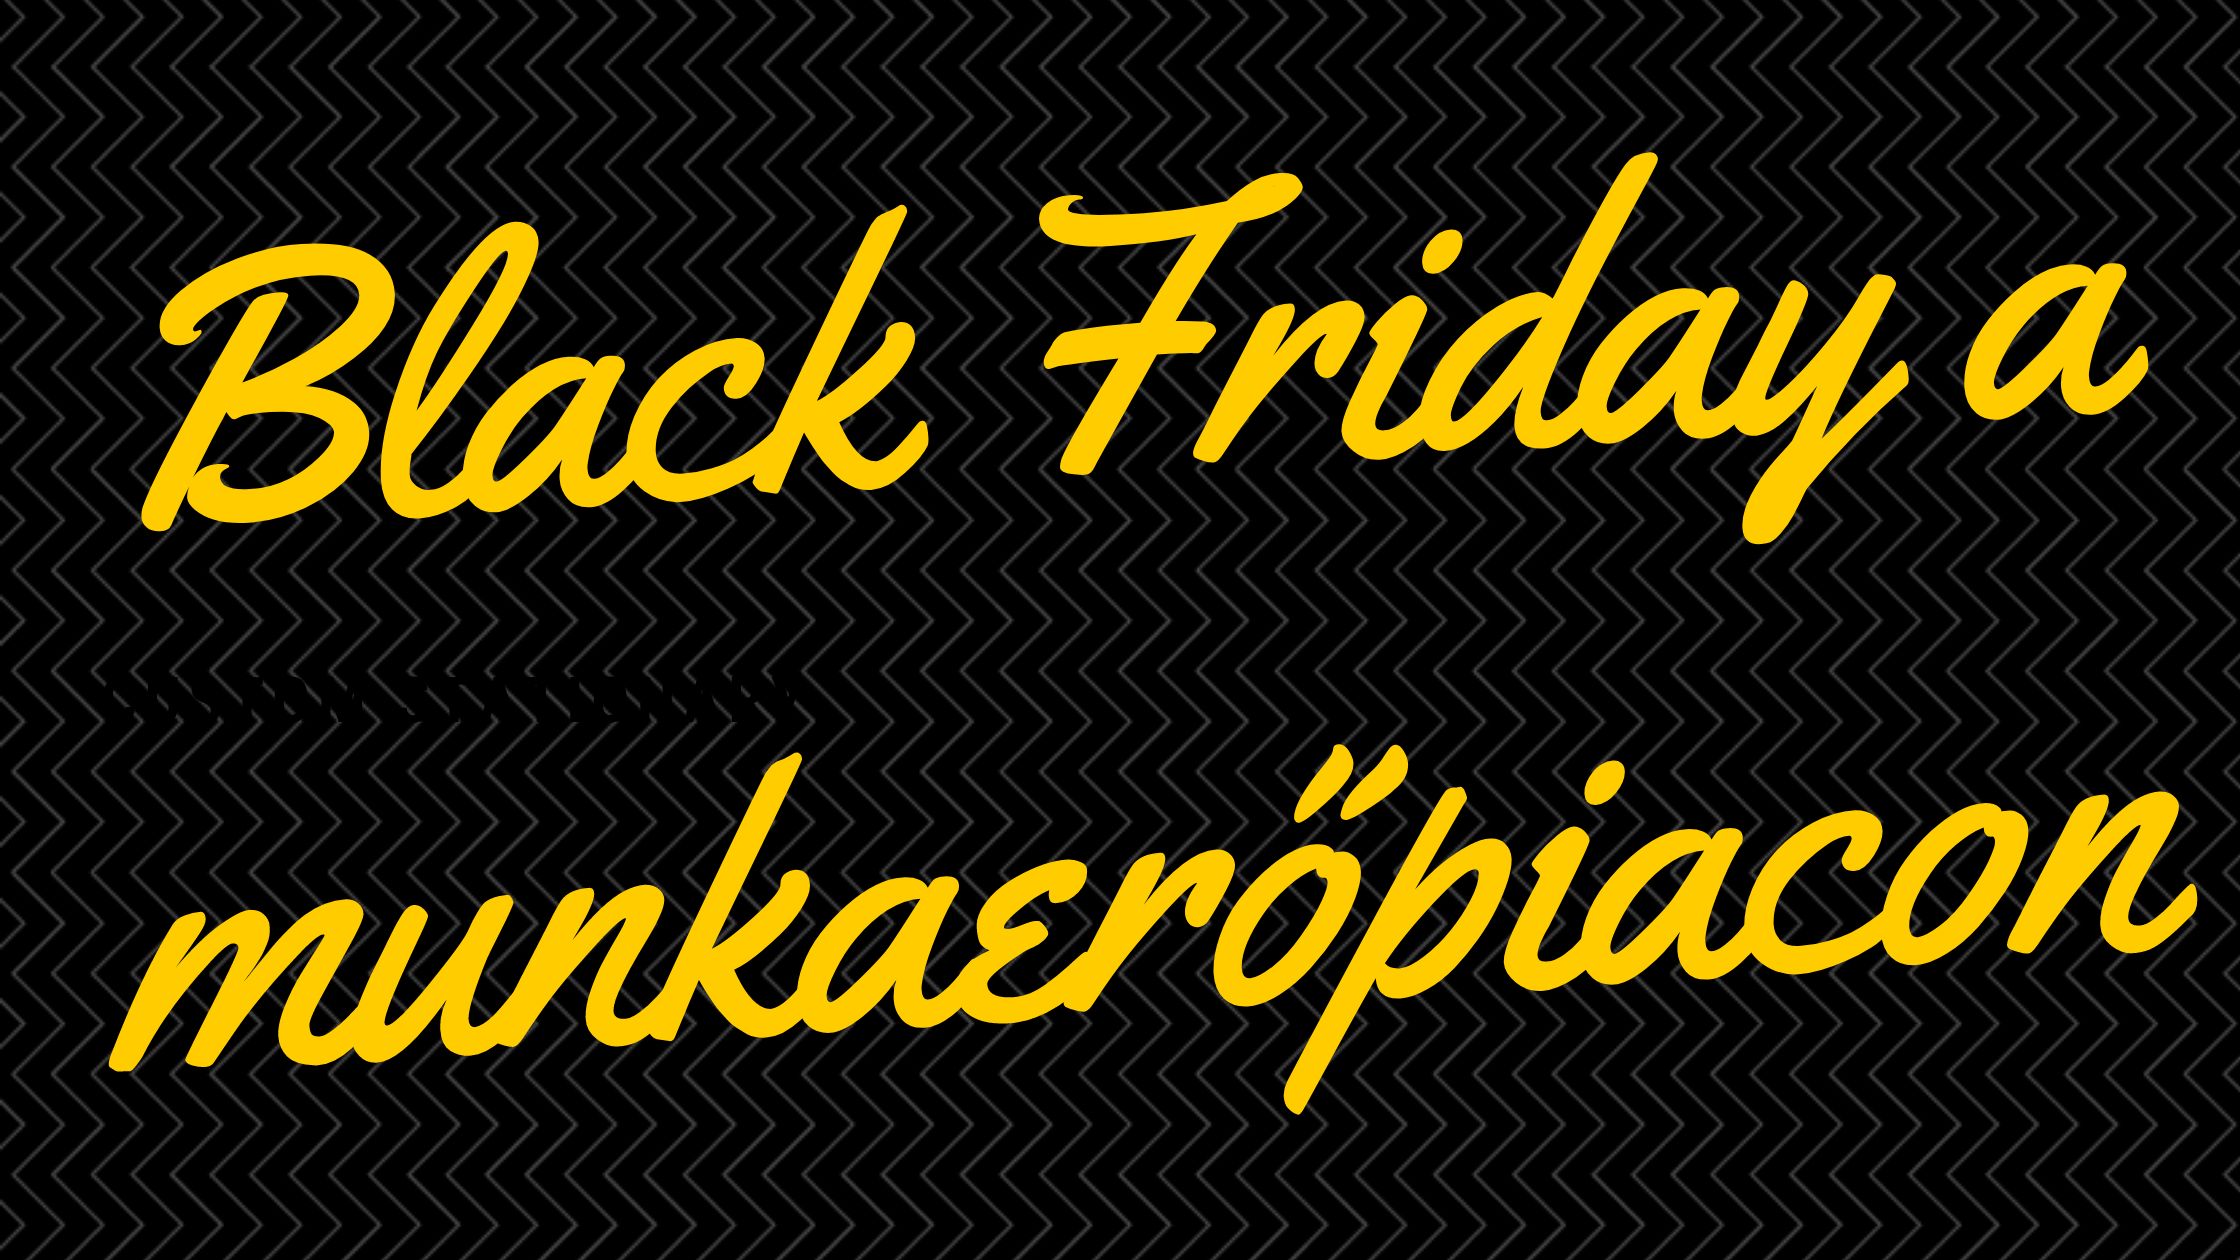 Black Friday a munkaerőpiacon blog fokep